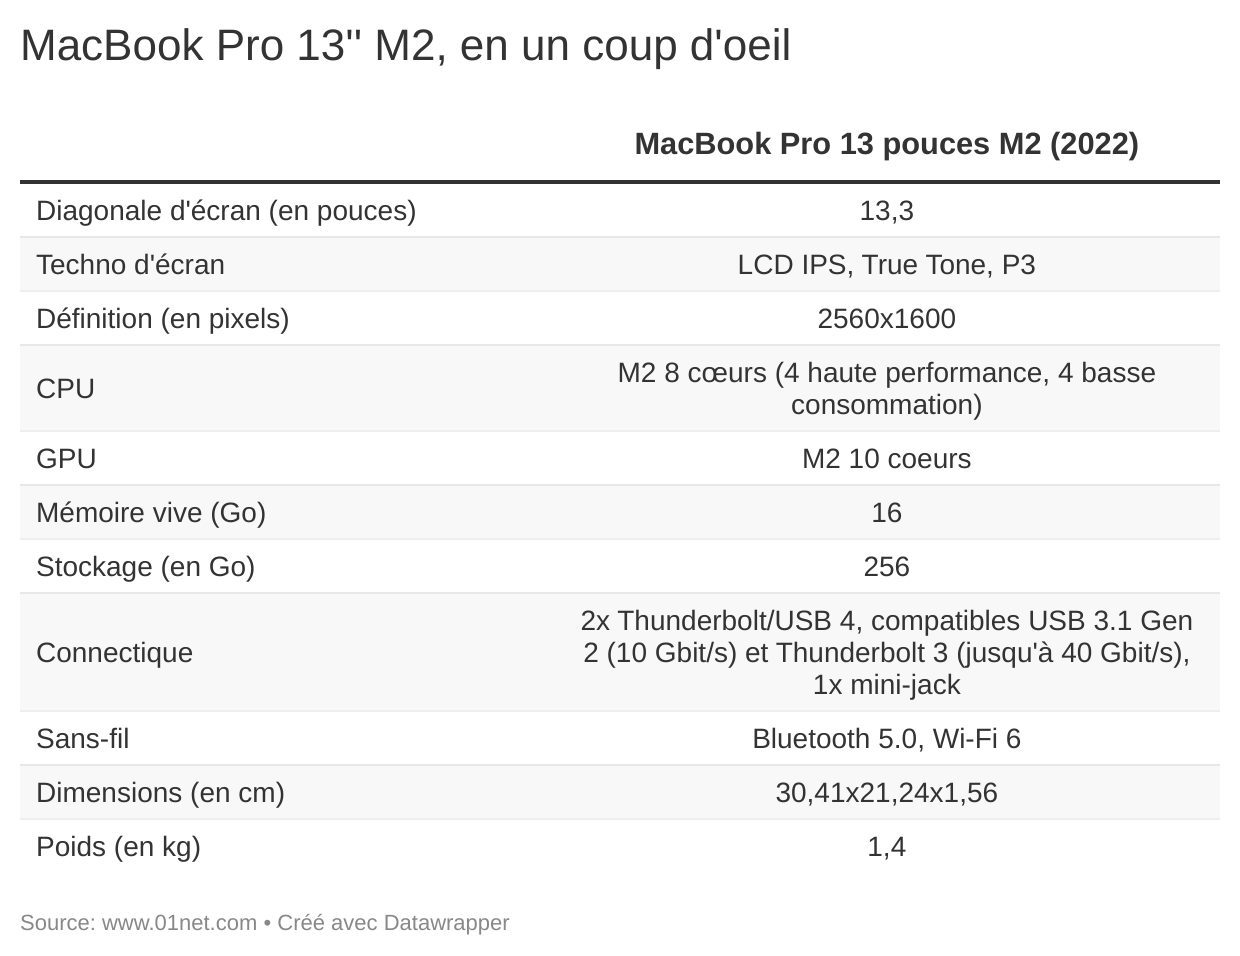 MacBook Pro 13" M2, en un coup d'oeil